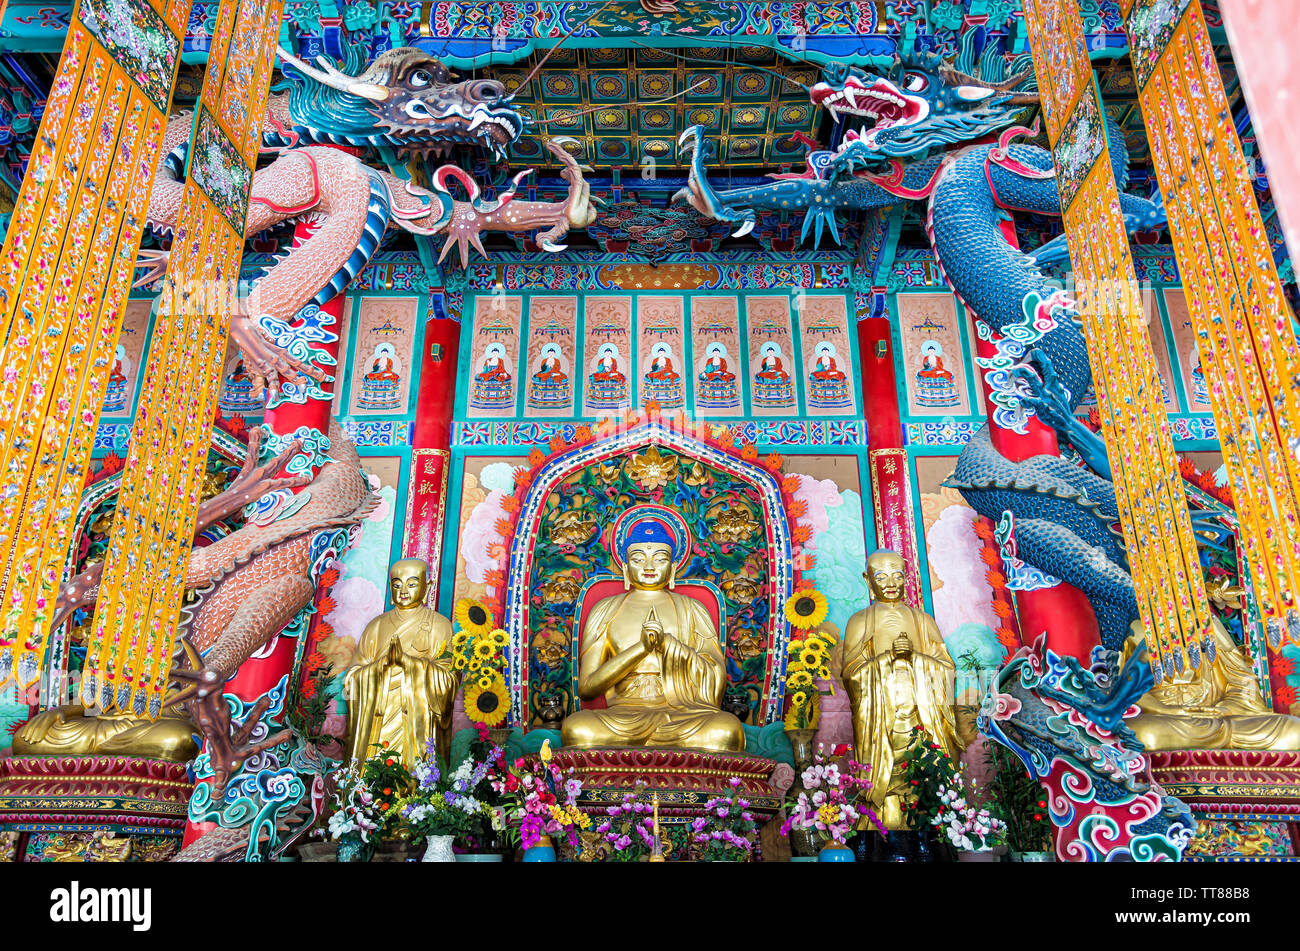 Kunming, Chine - 29 Avril 2019 : vue sur le temple bouddhiste Yuantong salle principale. Il conserve le style de l'architecture de la dynastie Yuan Banque D'Images